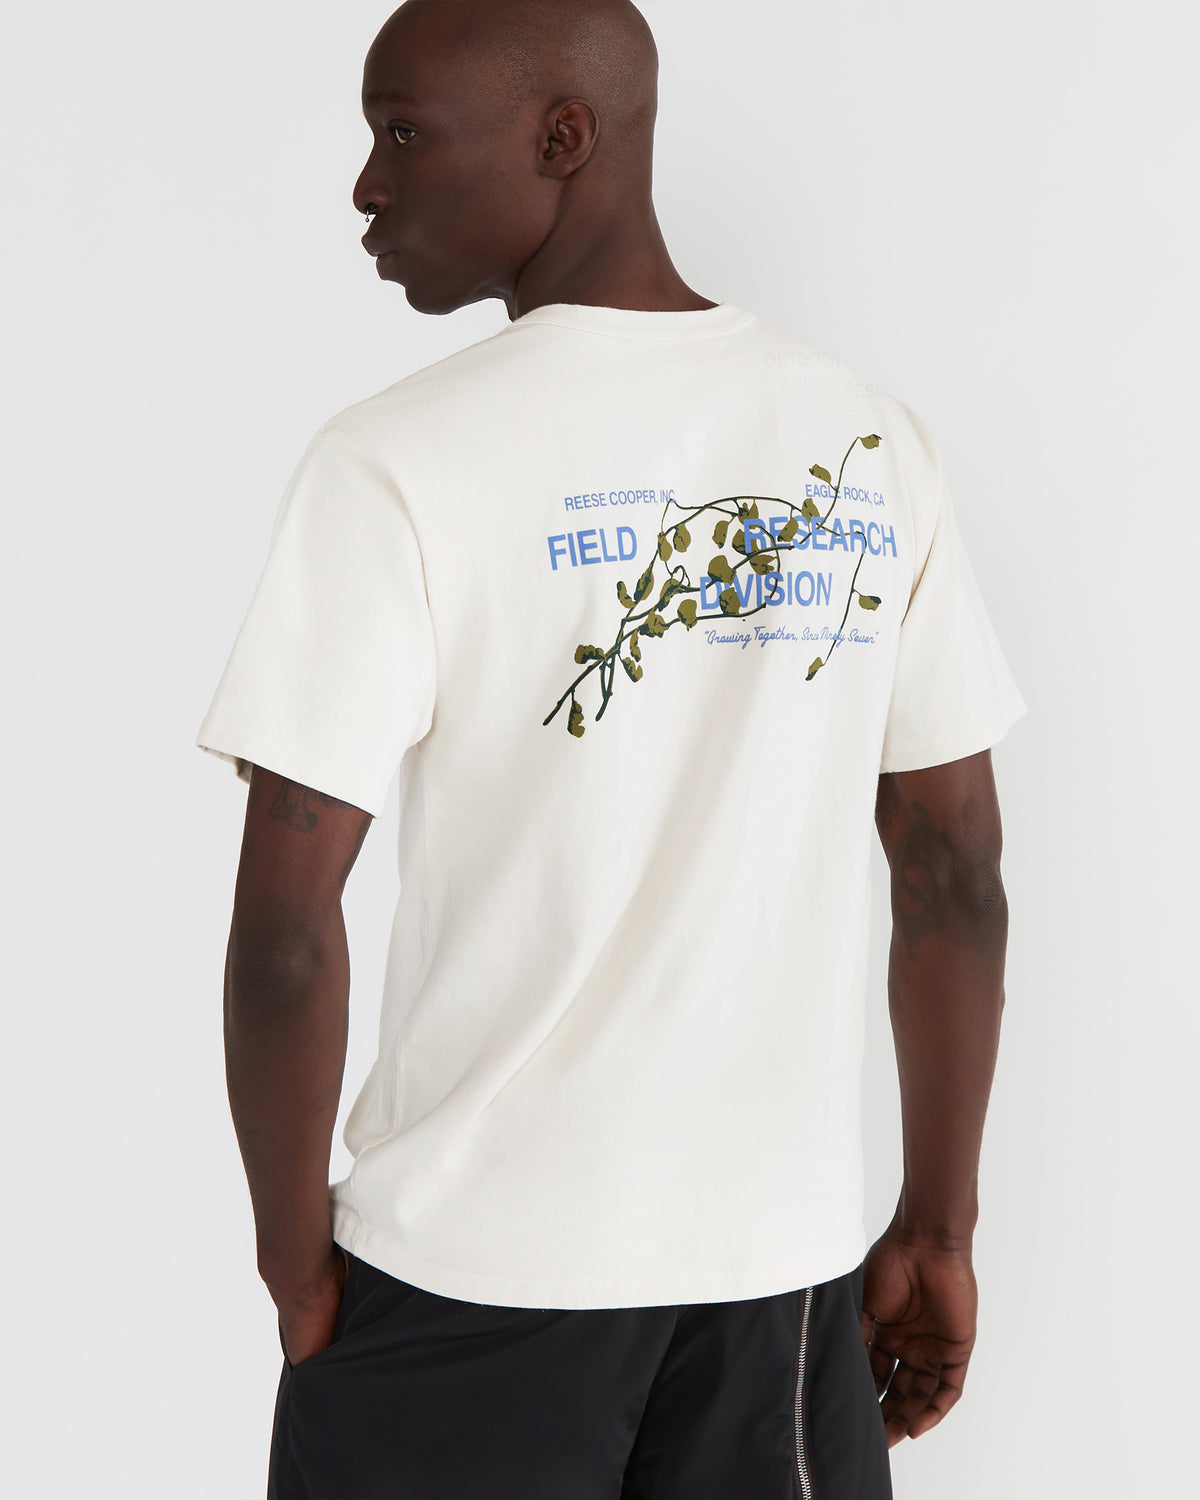 Reese Cooper Fresh Air x Juliet Johnstone T-Shirt - Tops